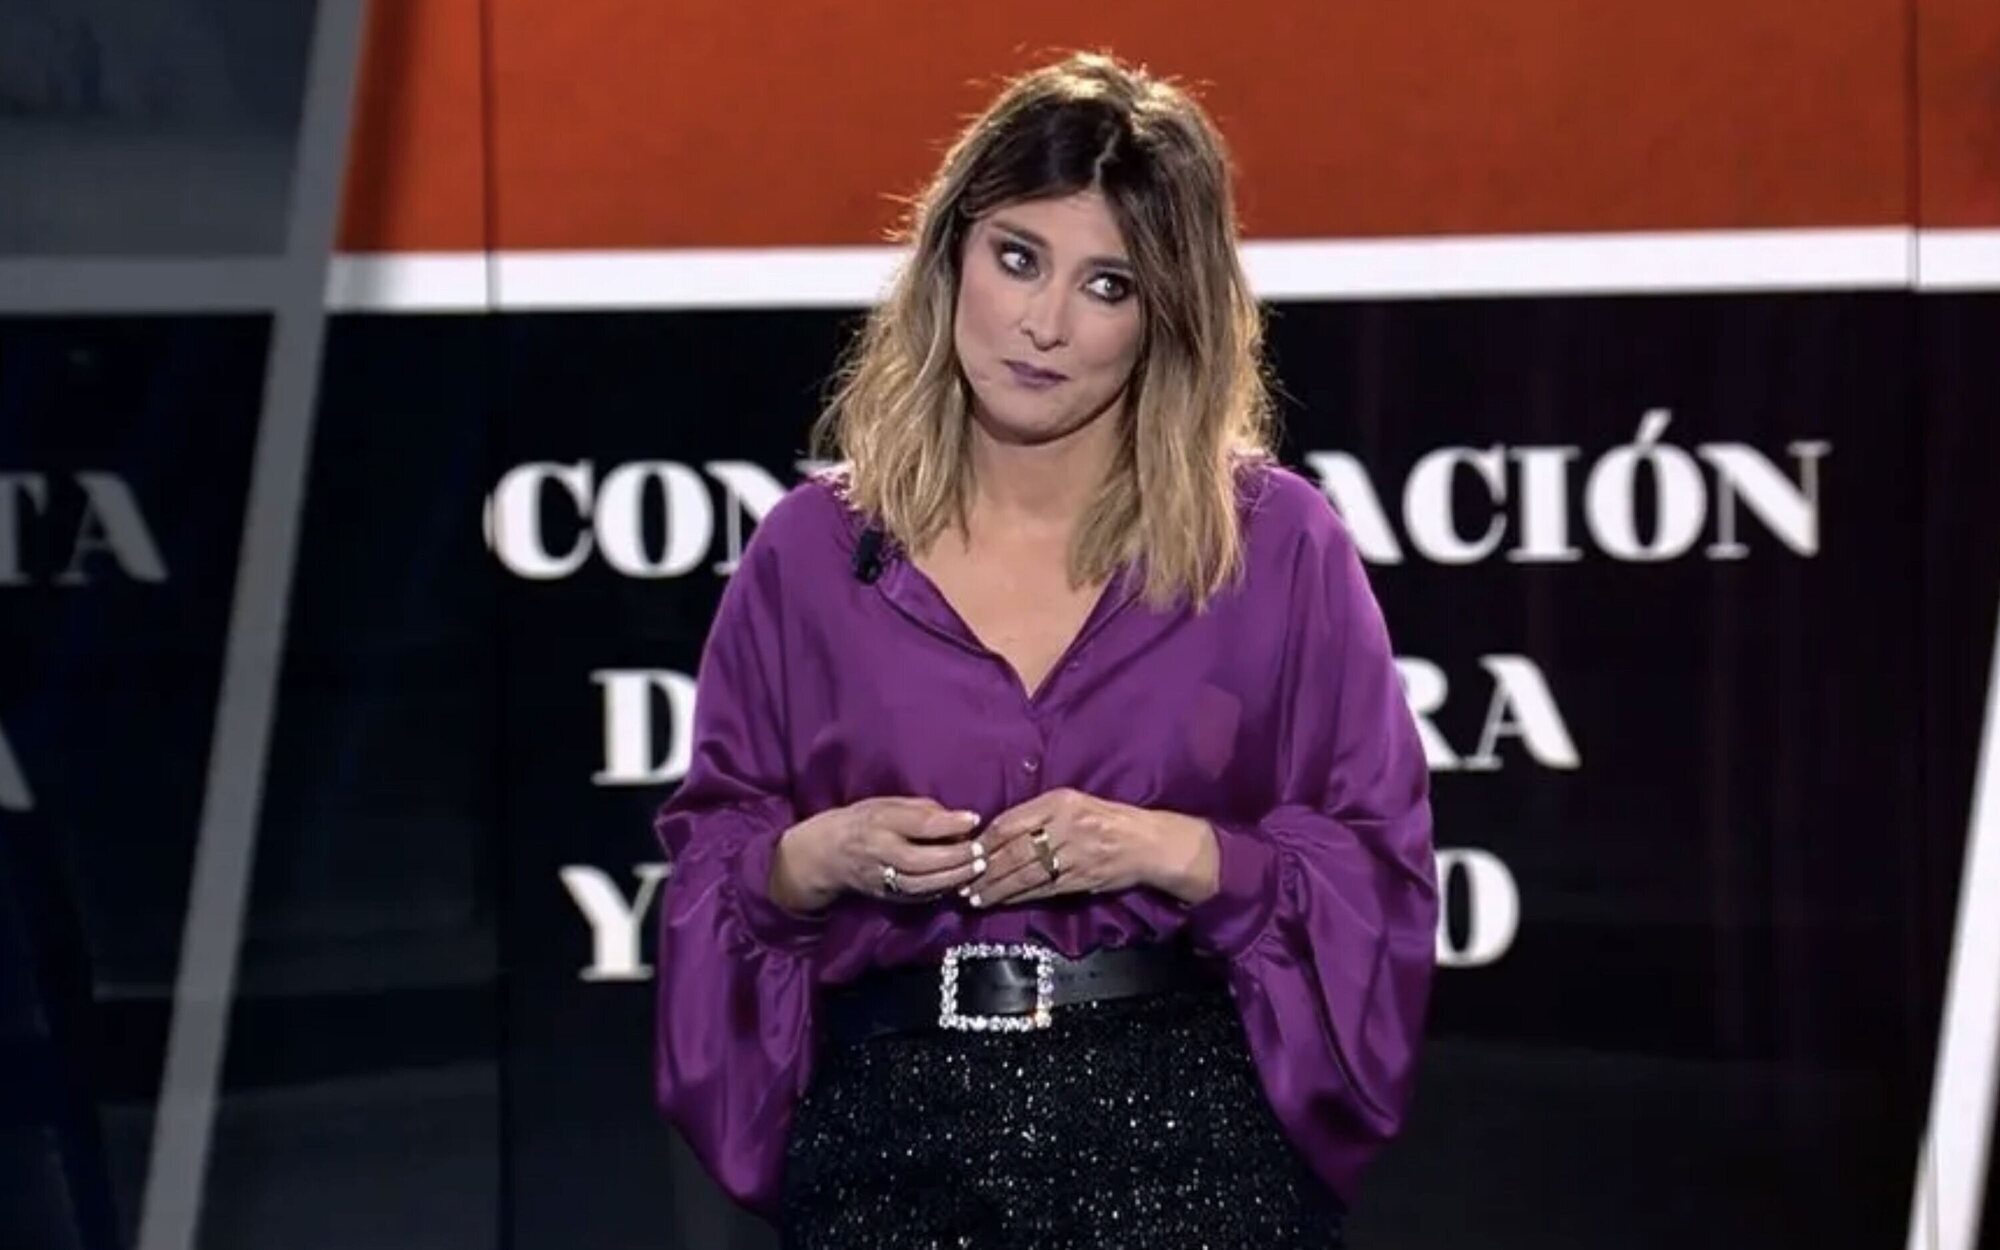 Mediaset reajusta su programación: 'El debate de las tentaciones' salta a Telecinco el lunes 3 de enero